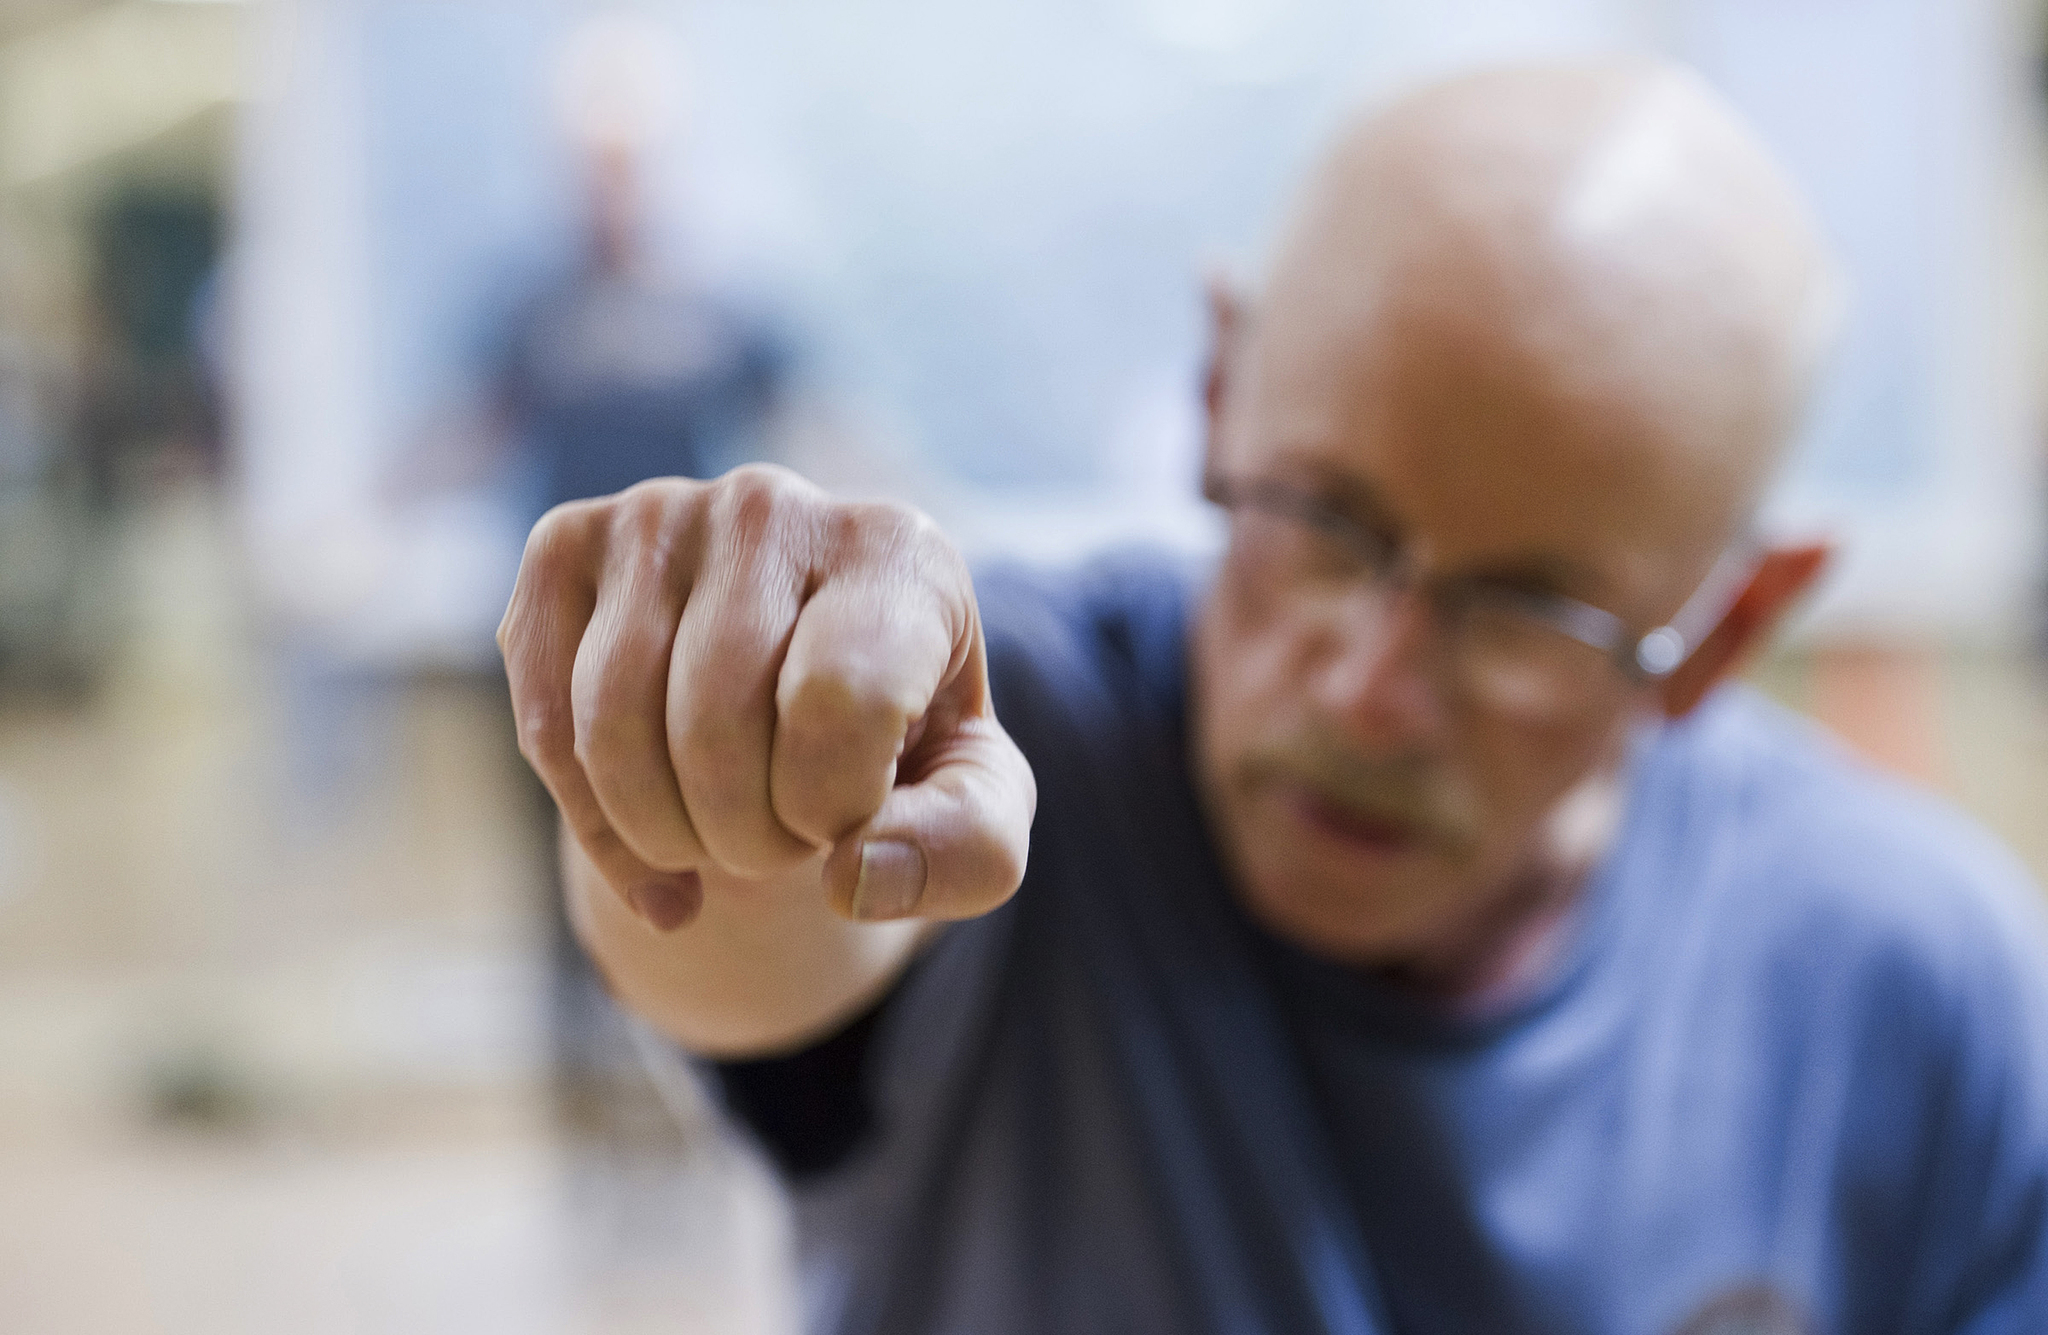 Juneau Parkinson’s patients use boxing to treat symptoms